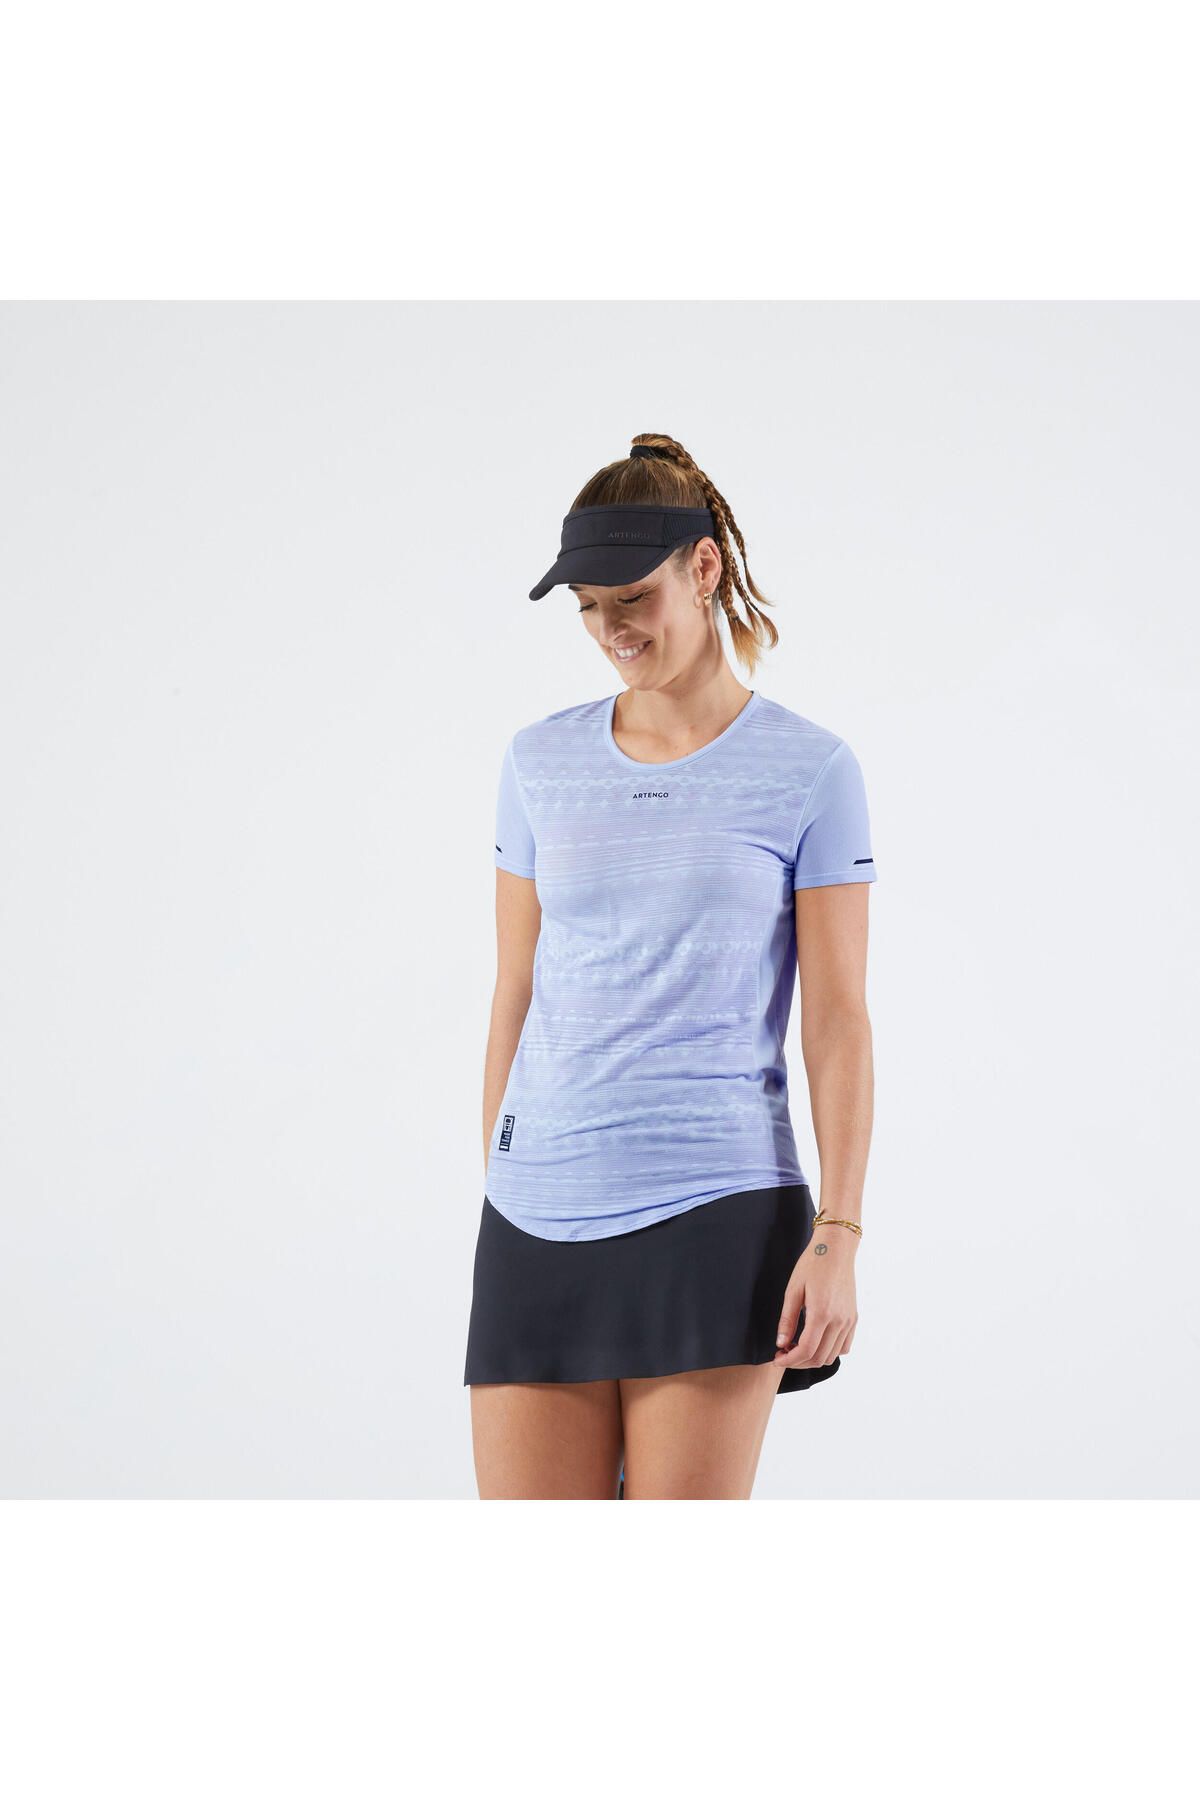 Decathlon Kadın Tenis Tişörtü - Mavi - Ultra Light 900